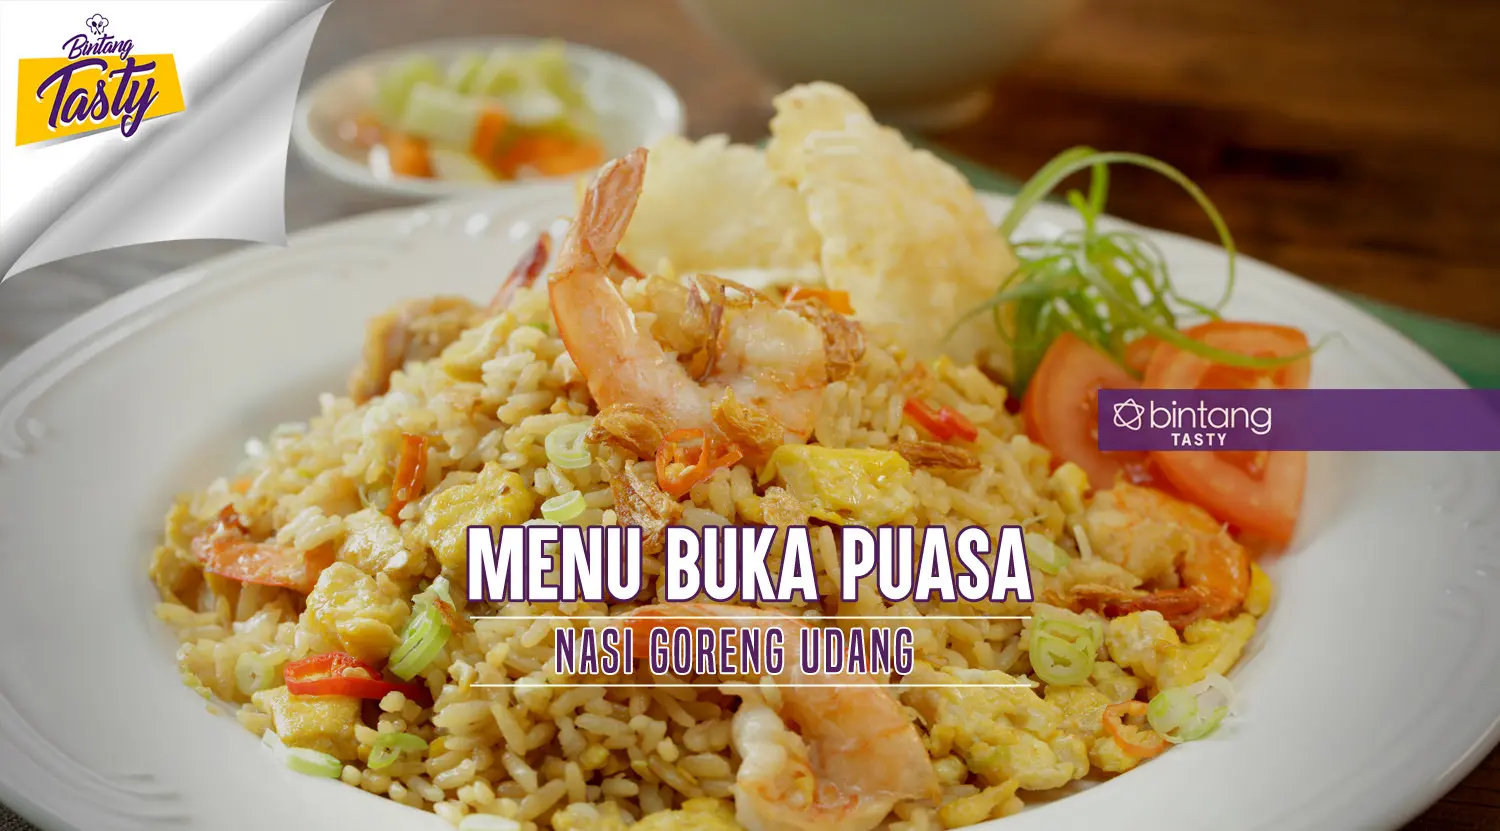 Menu Buka Puasa: Nasi Goreng Udang. (Foto: Bintang.com/Daniel Kampua, Digital Imaging: Nurman Abdul Hakim/Bintang.com, Chef: Arum Sari)